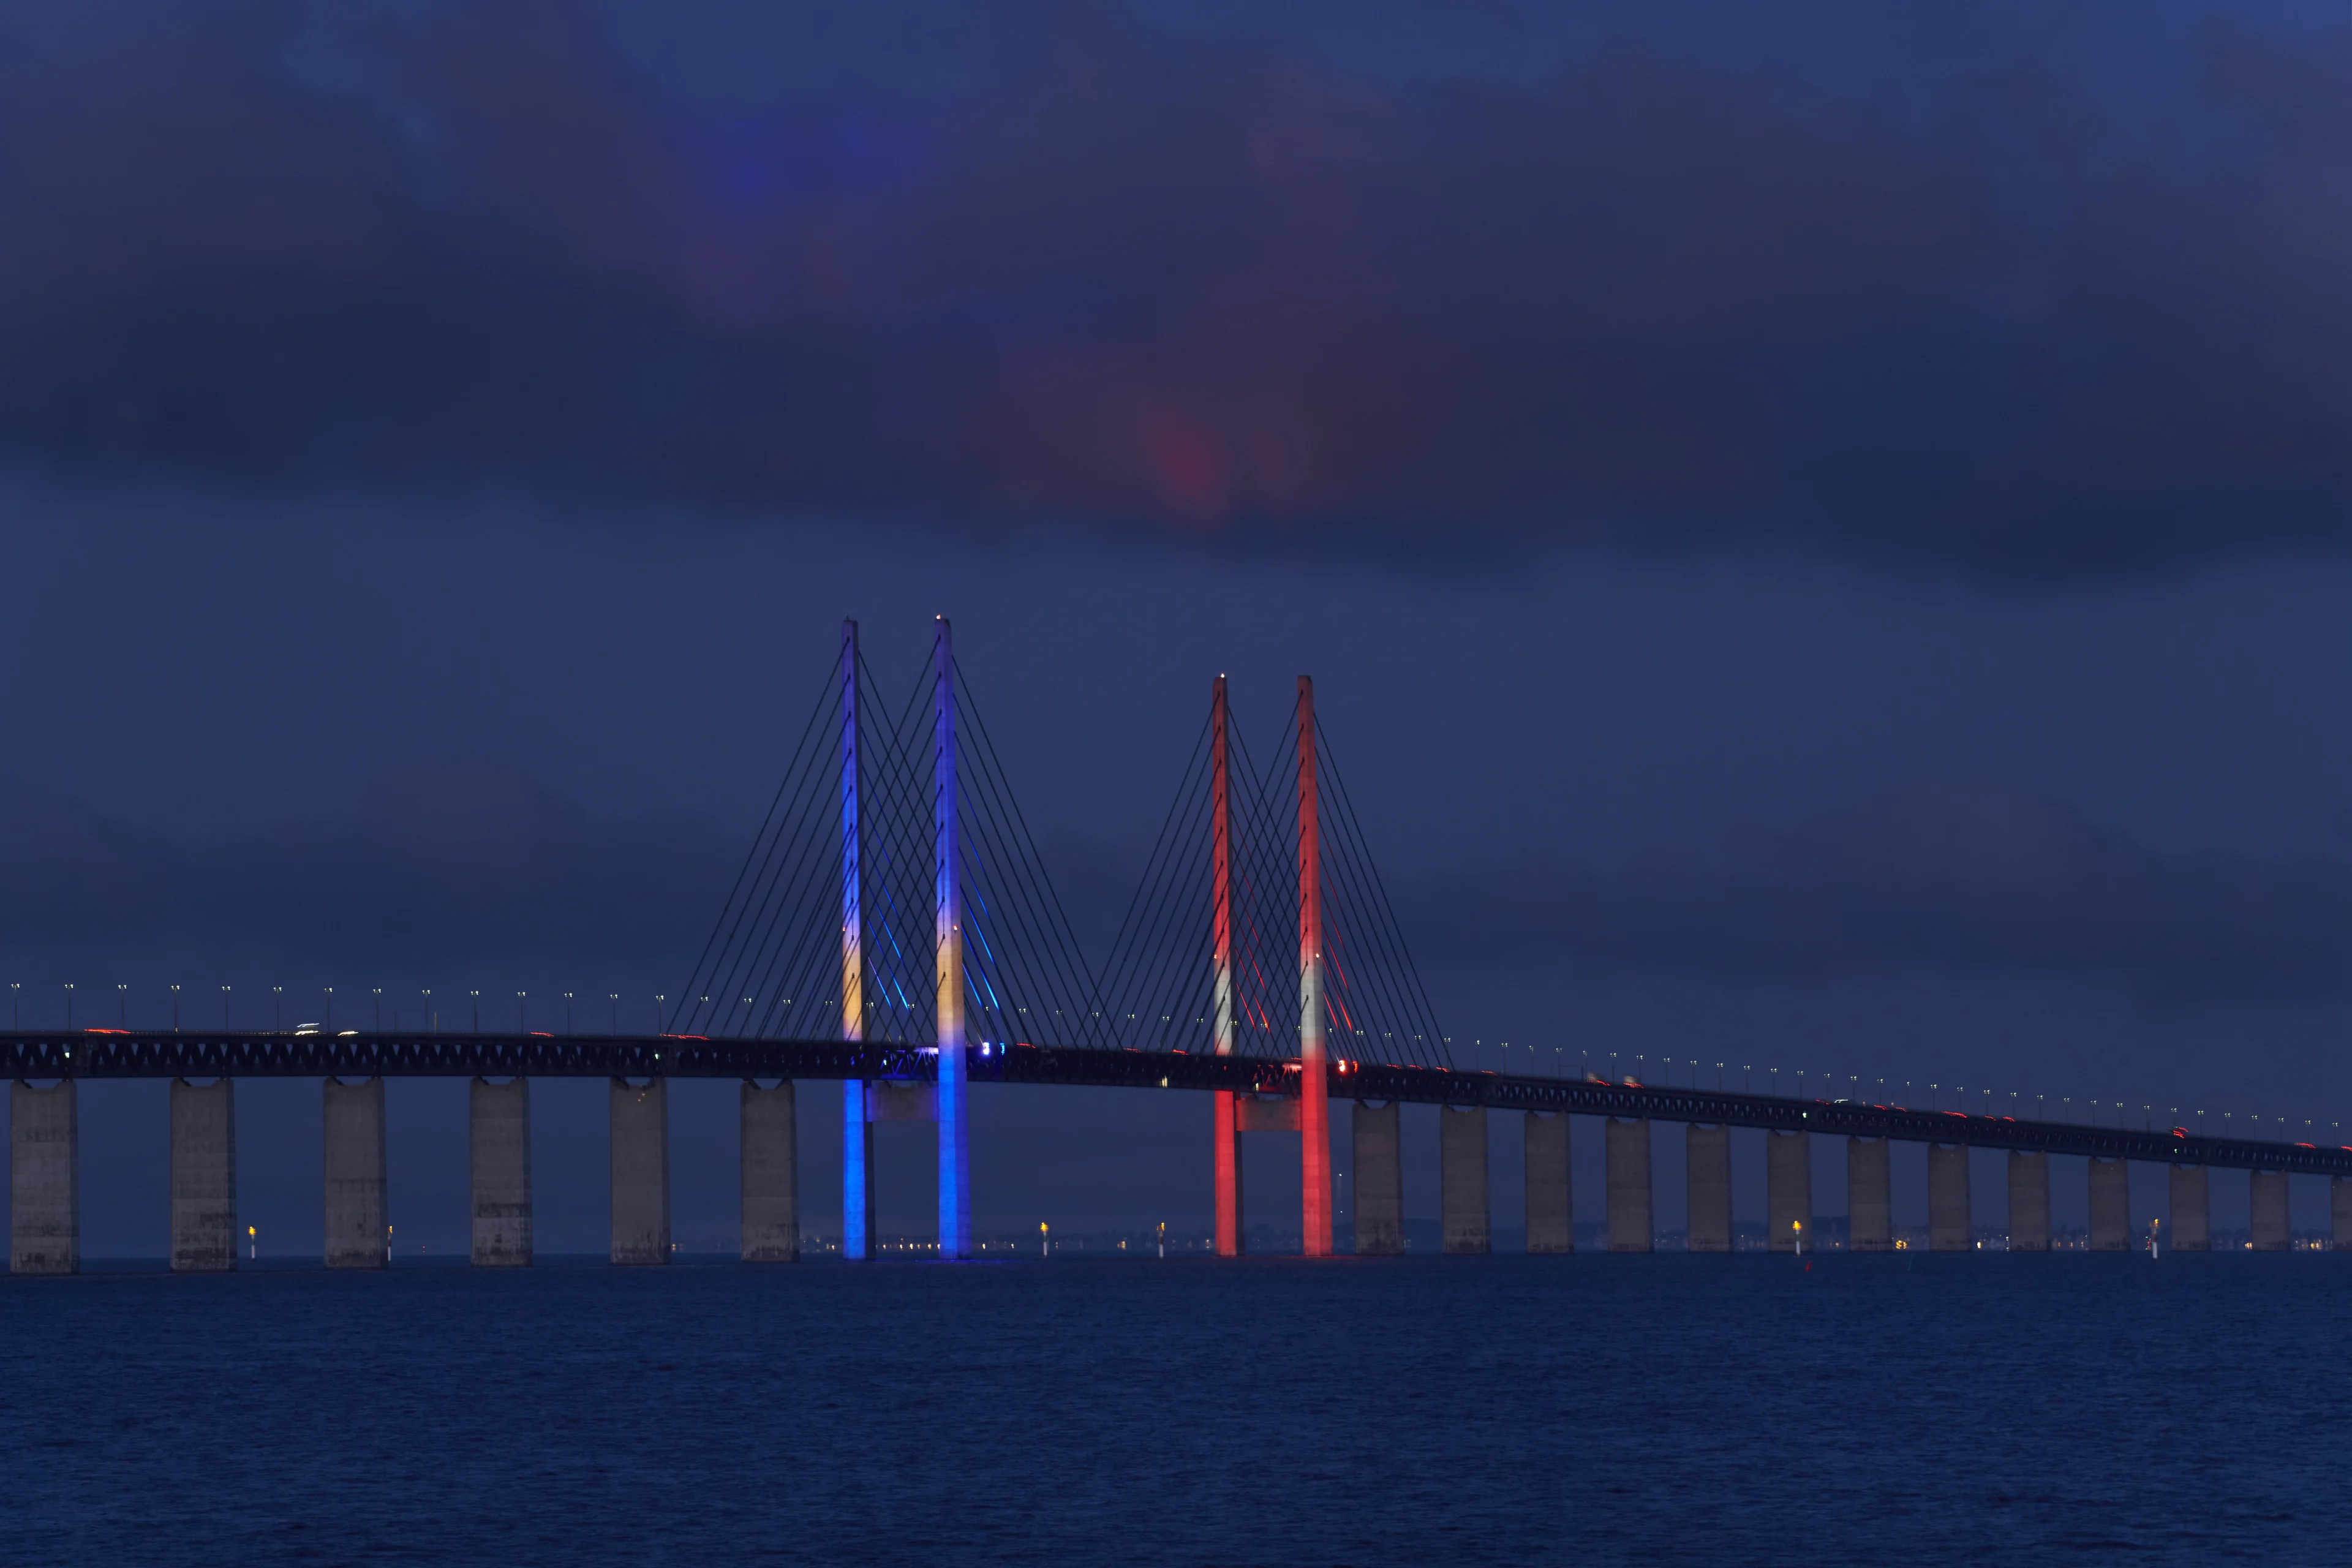 Øresundsbrons pylonbelysning i den svenska och danska flaggans färger – blått, gult, rött och vitt.